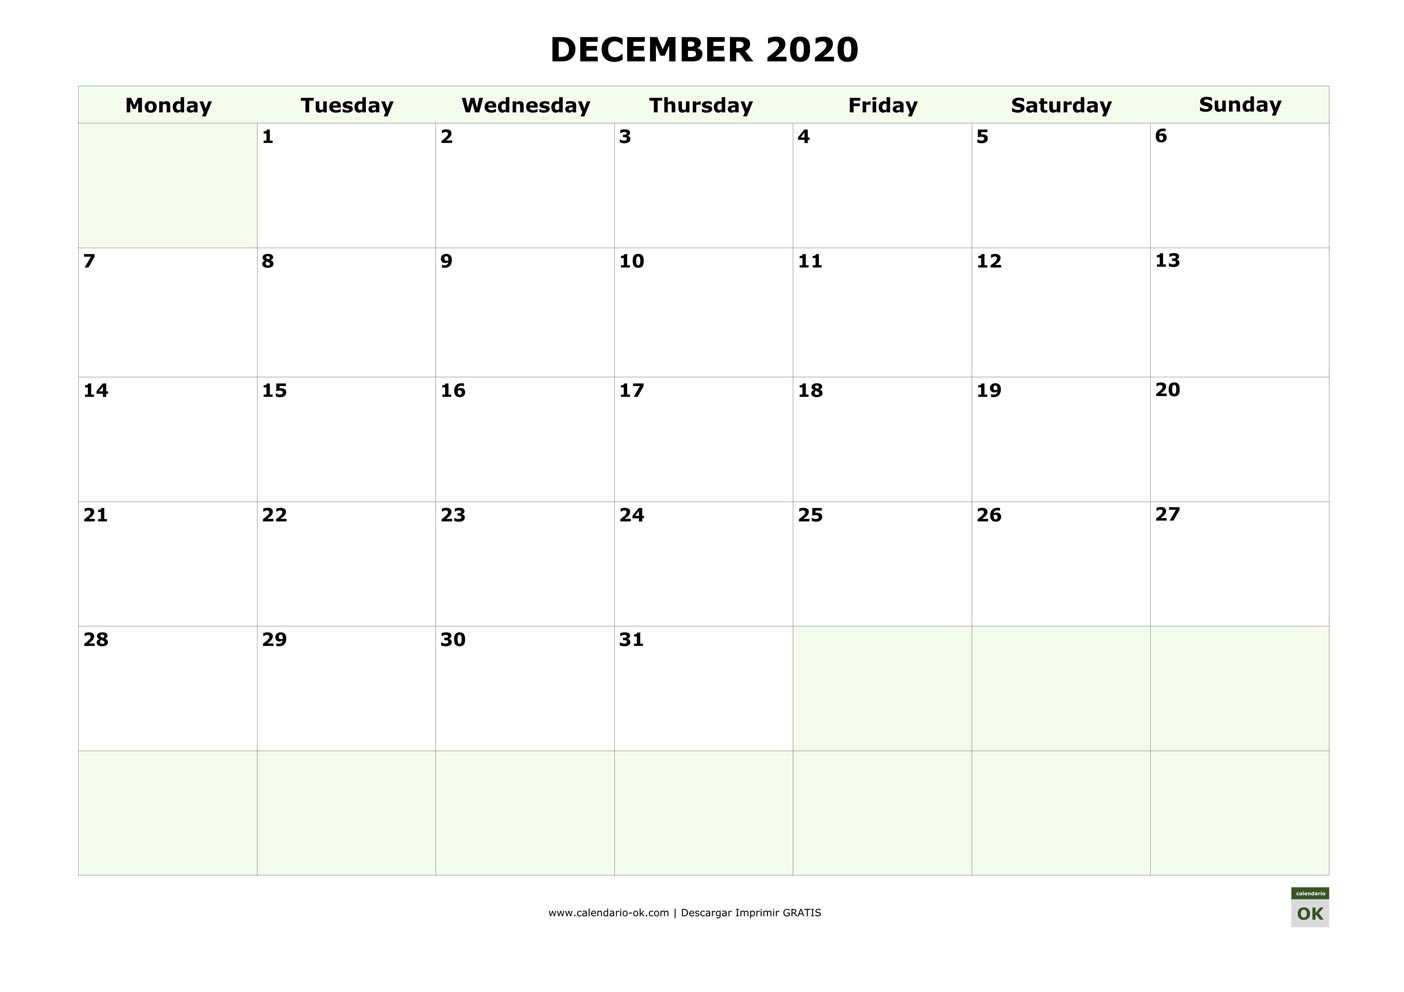 DICIEMBRE 2020 calendario en INGLES